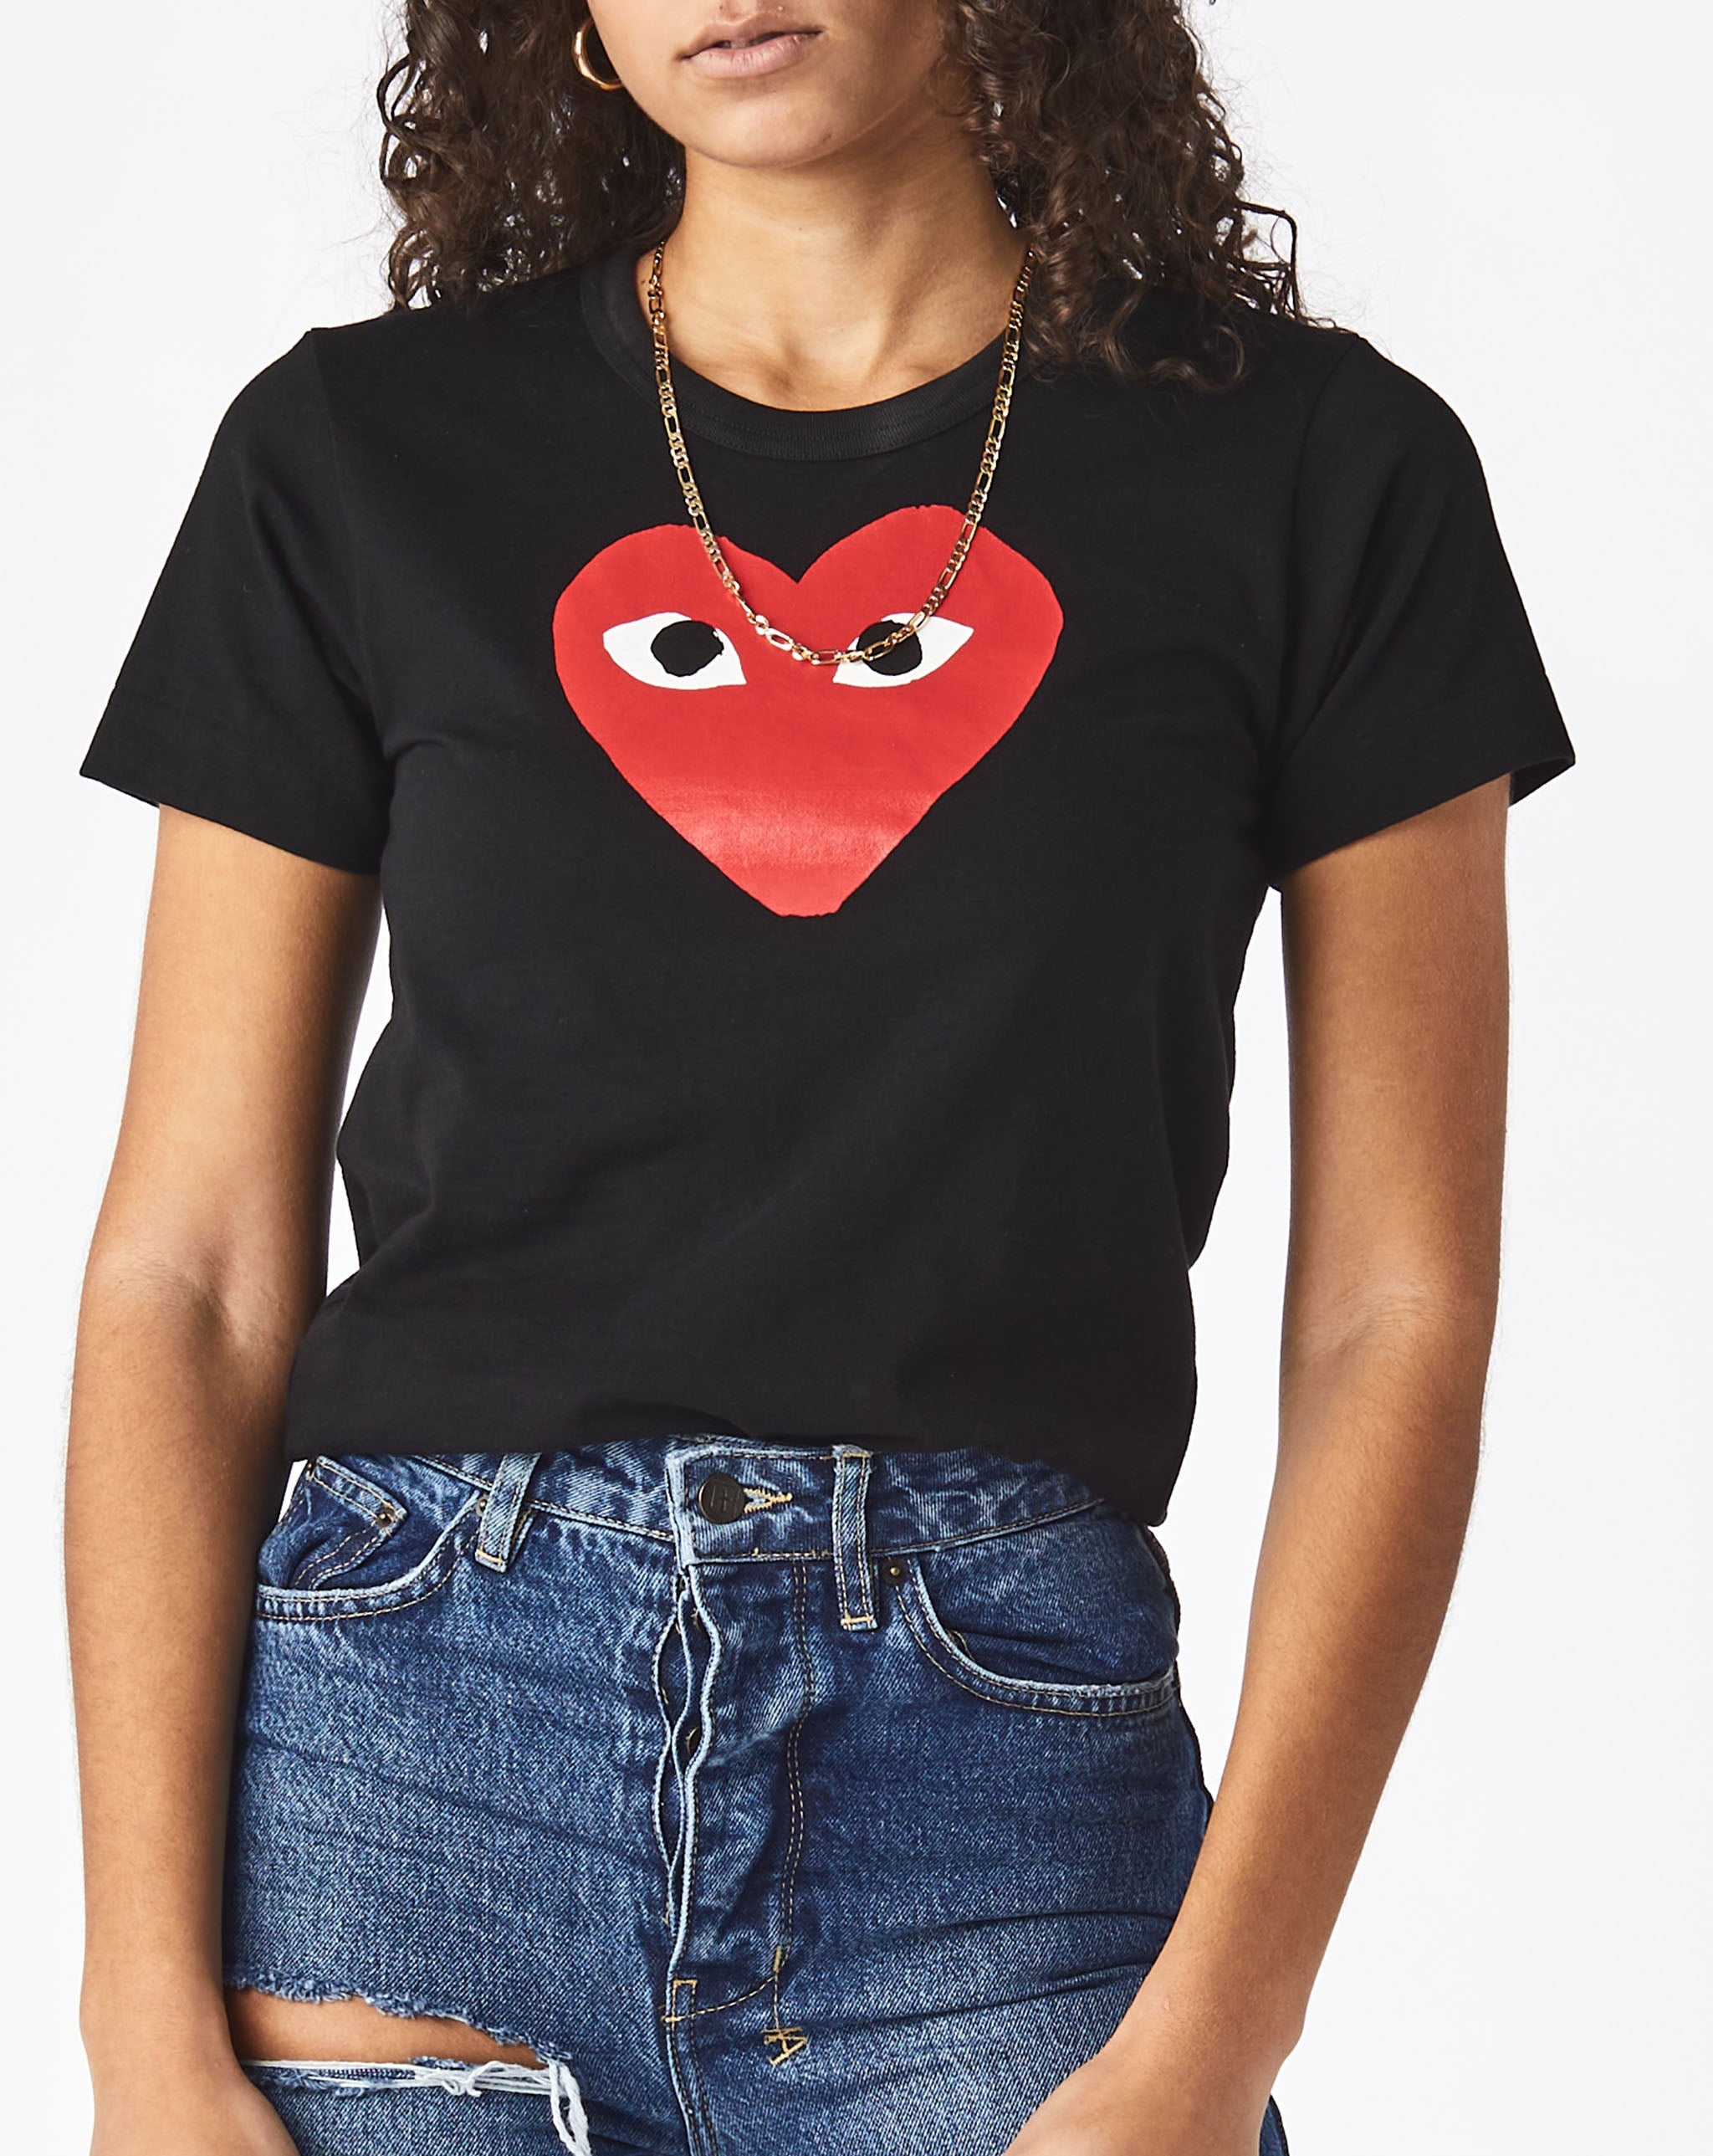 Womens Double Heart T-Shirt Women's Play T-Shirt  - Cheap Urlfreeze Jordan outlet